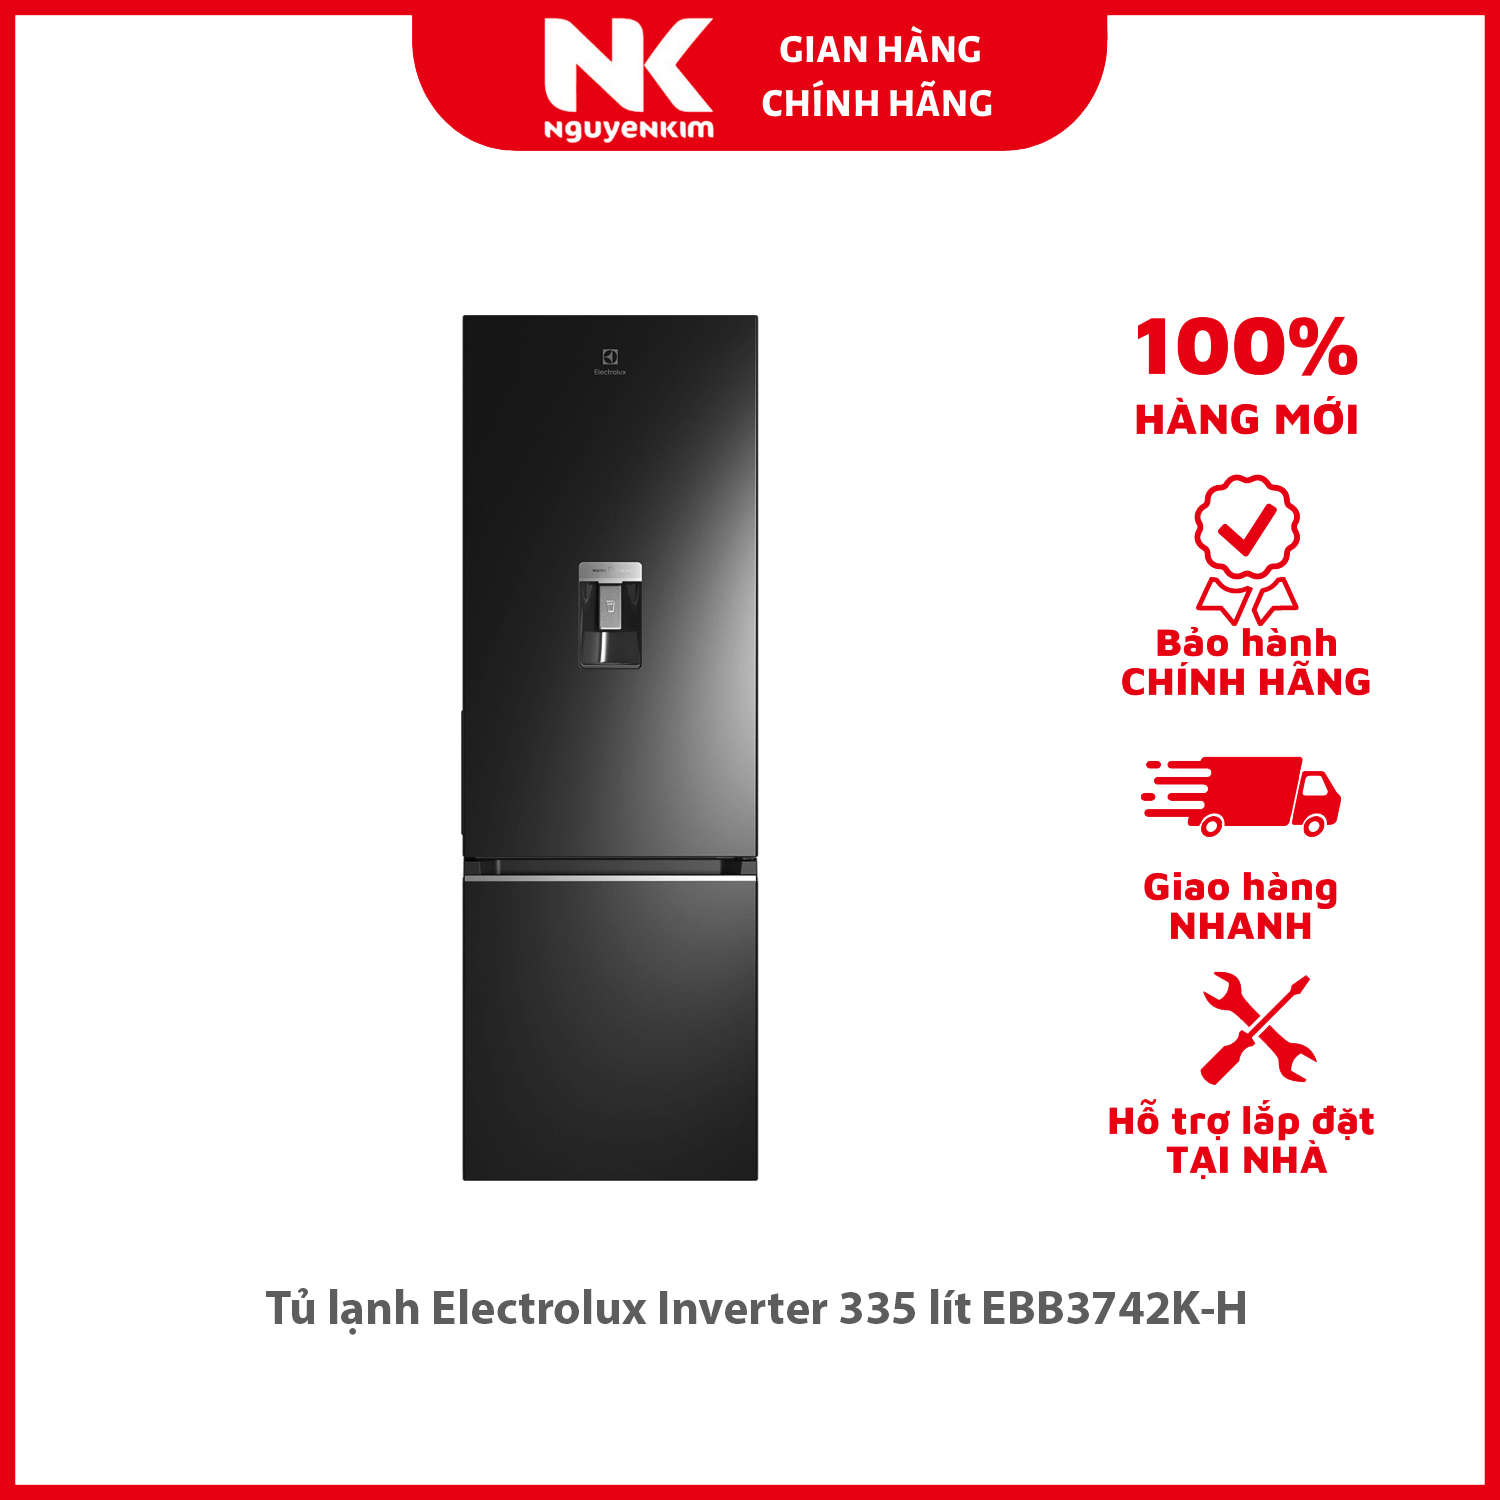 Tủ lạnh Electrolux Inverter 335 lít EBB3742K-H - Hàng chính hãng [Giao hàng toàn quốc]